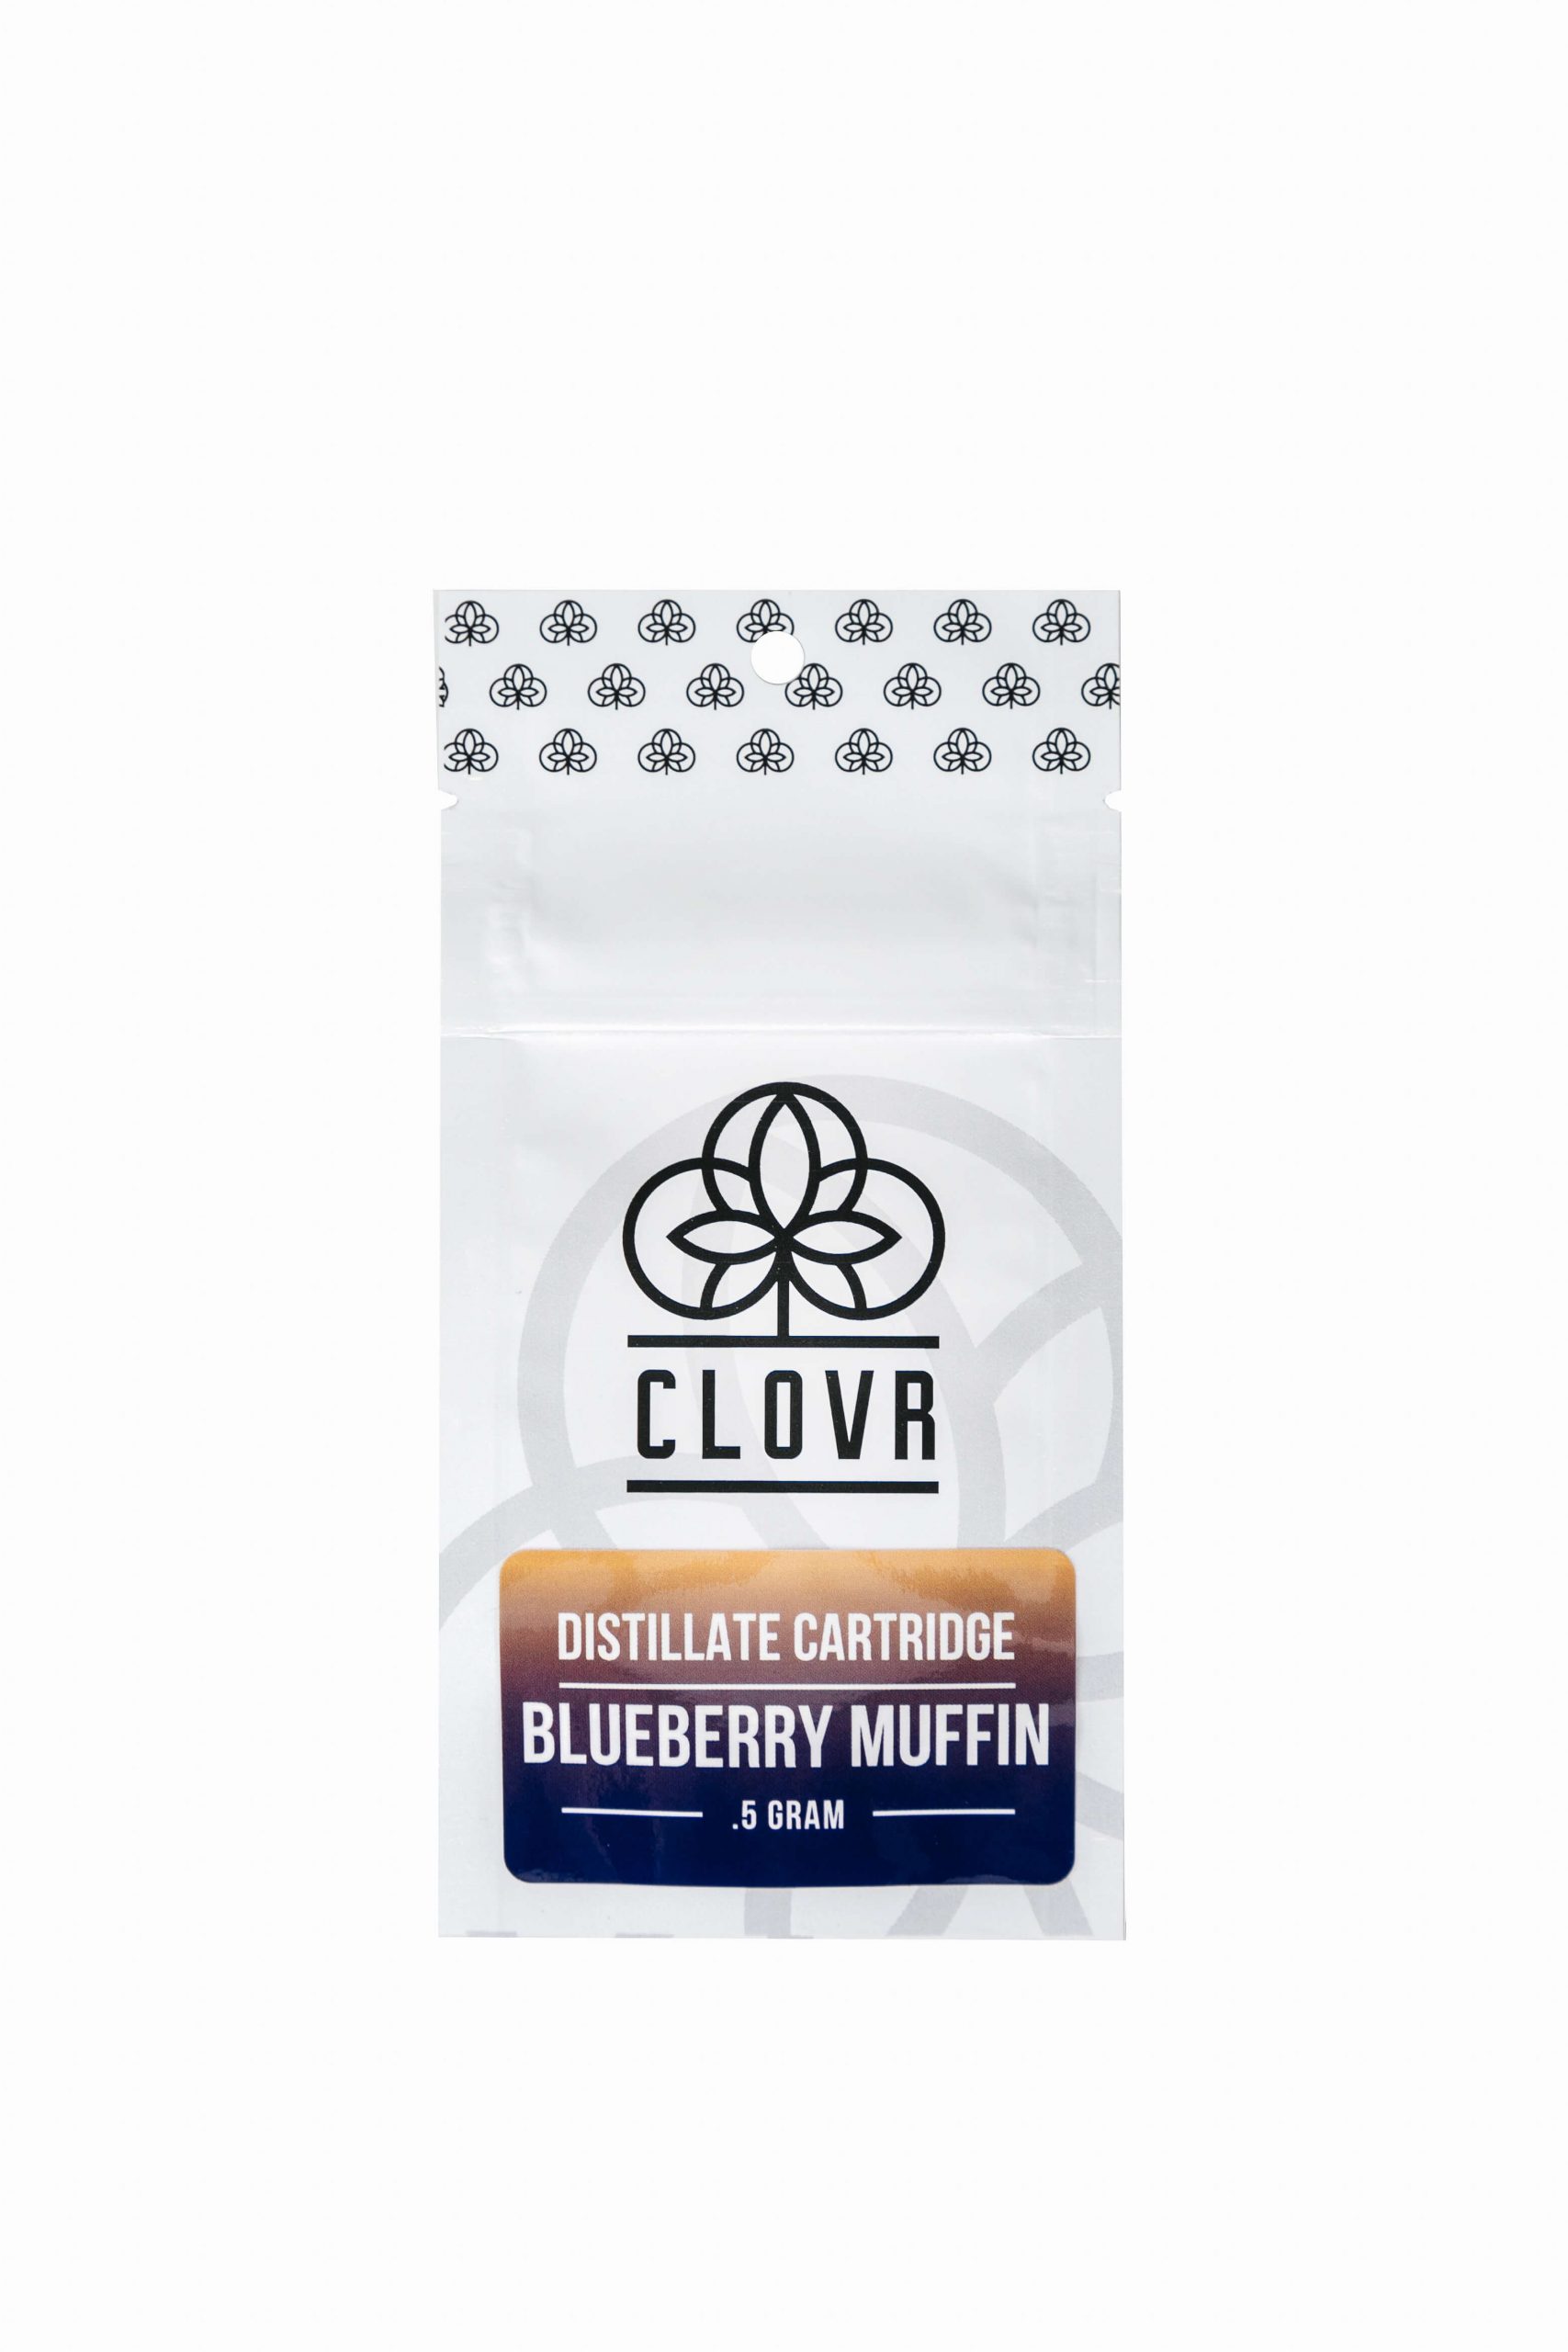 clovr marijuana distillate cartridge blueberry muffin packaging